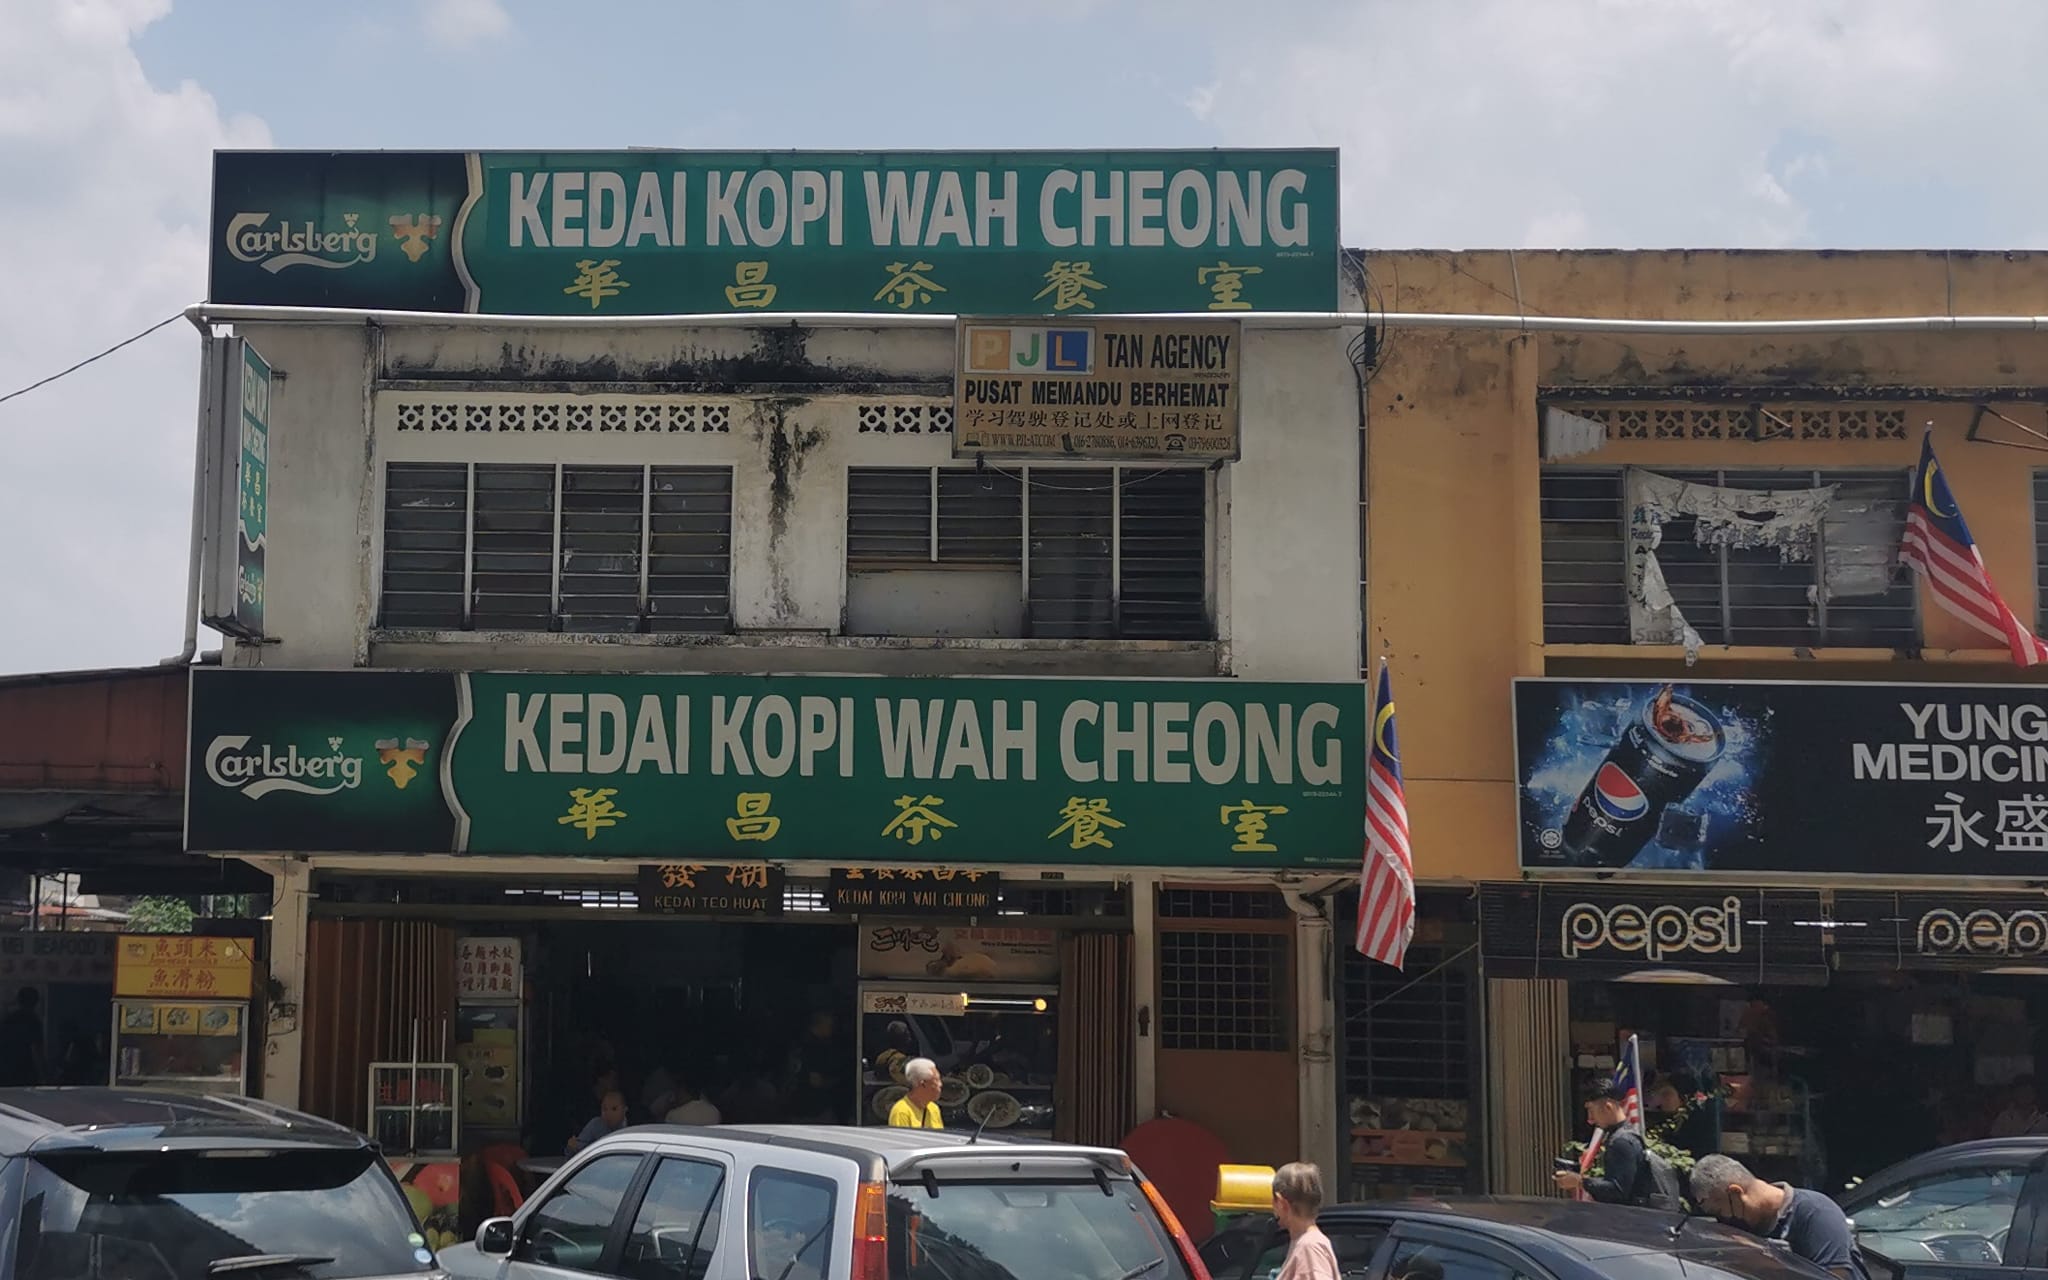 Kedai Kopi Wah Cheong